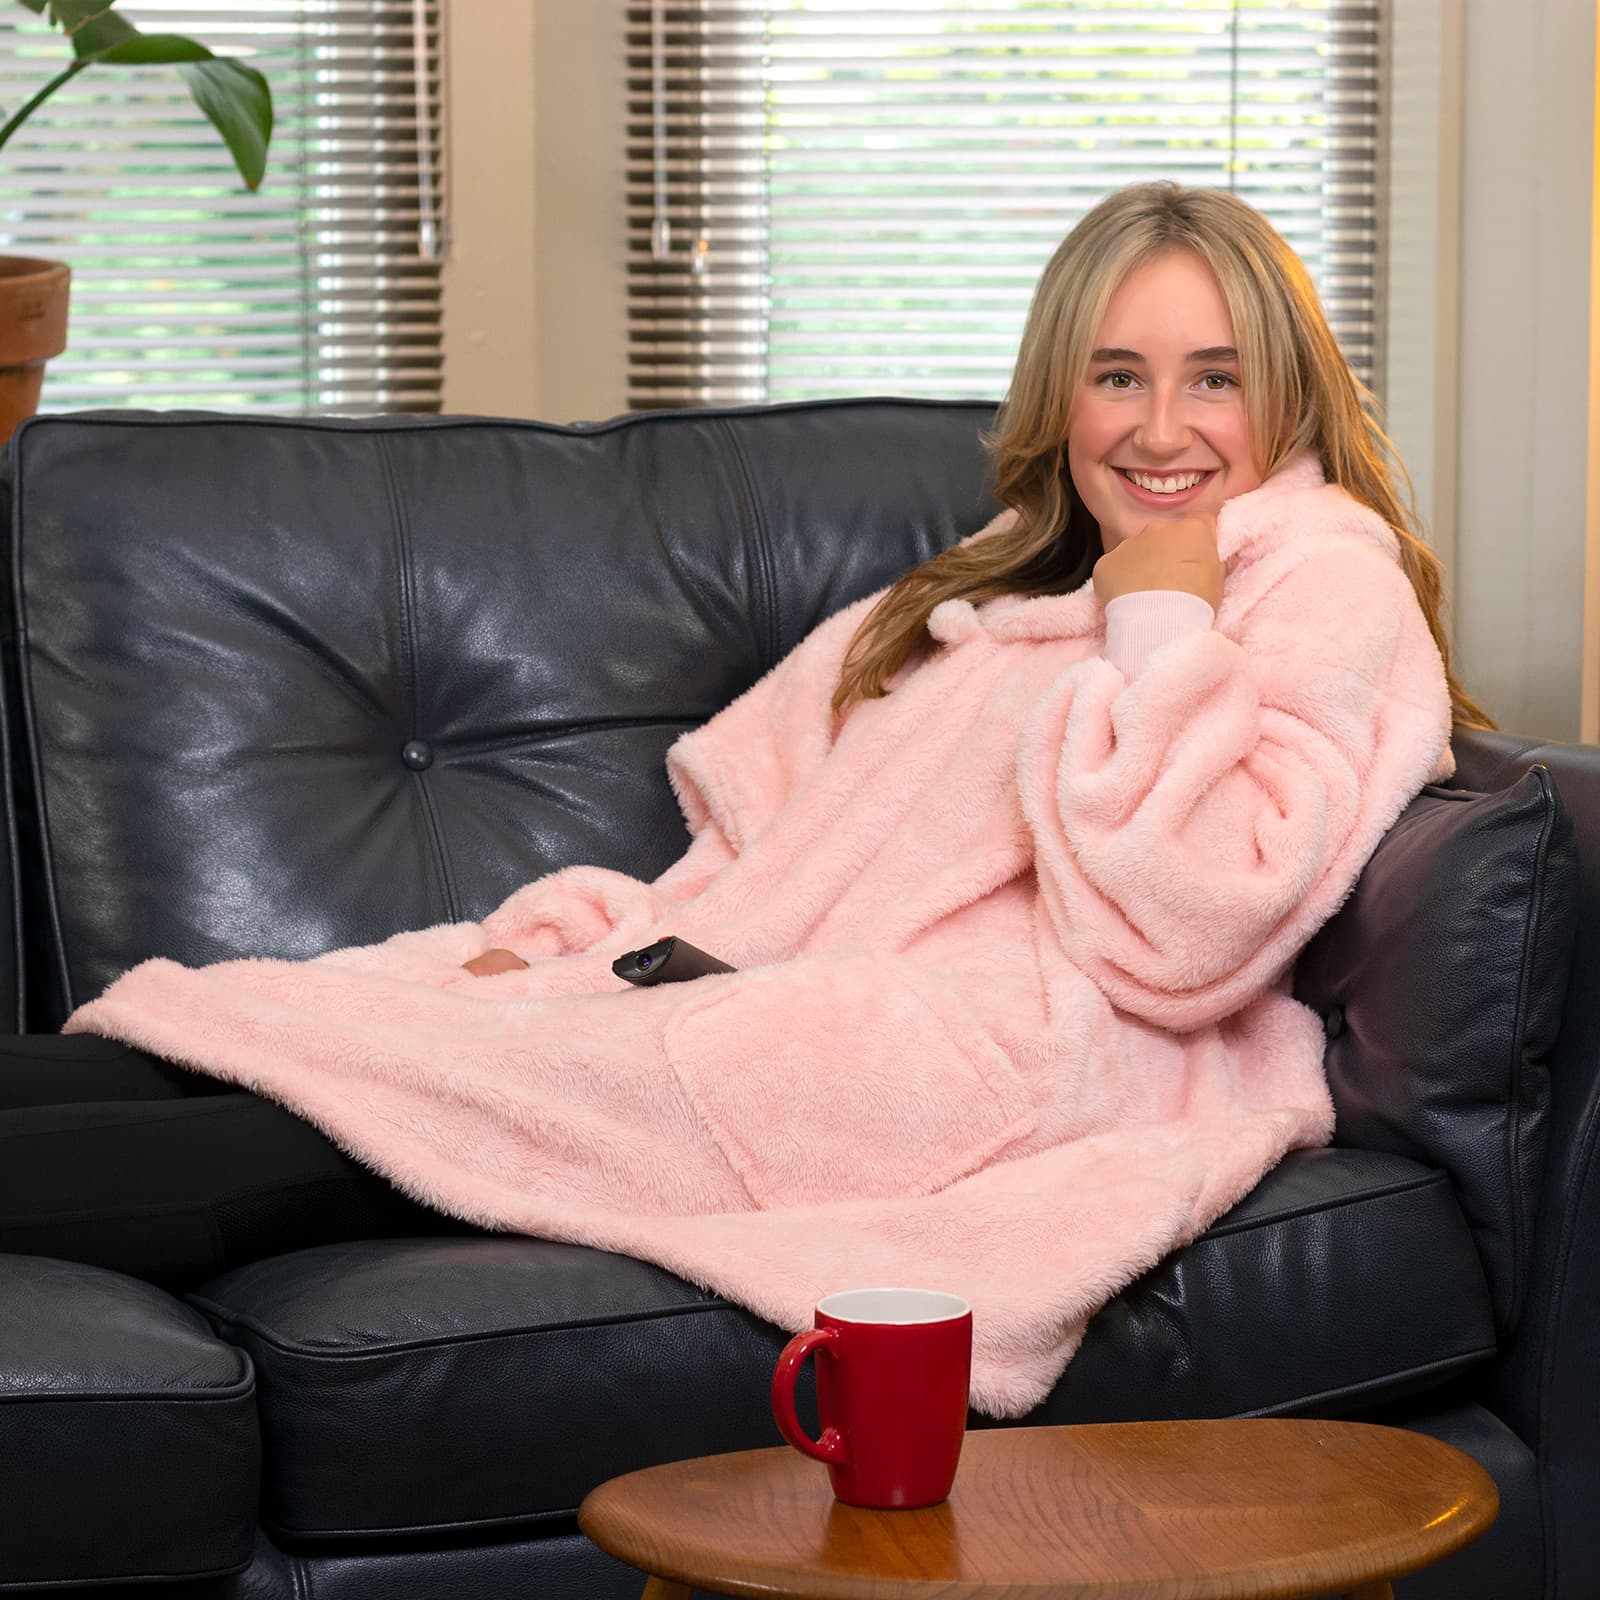 Snug-Rug Hoodie Blanket (Pink Quartz)